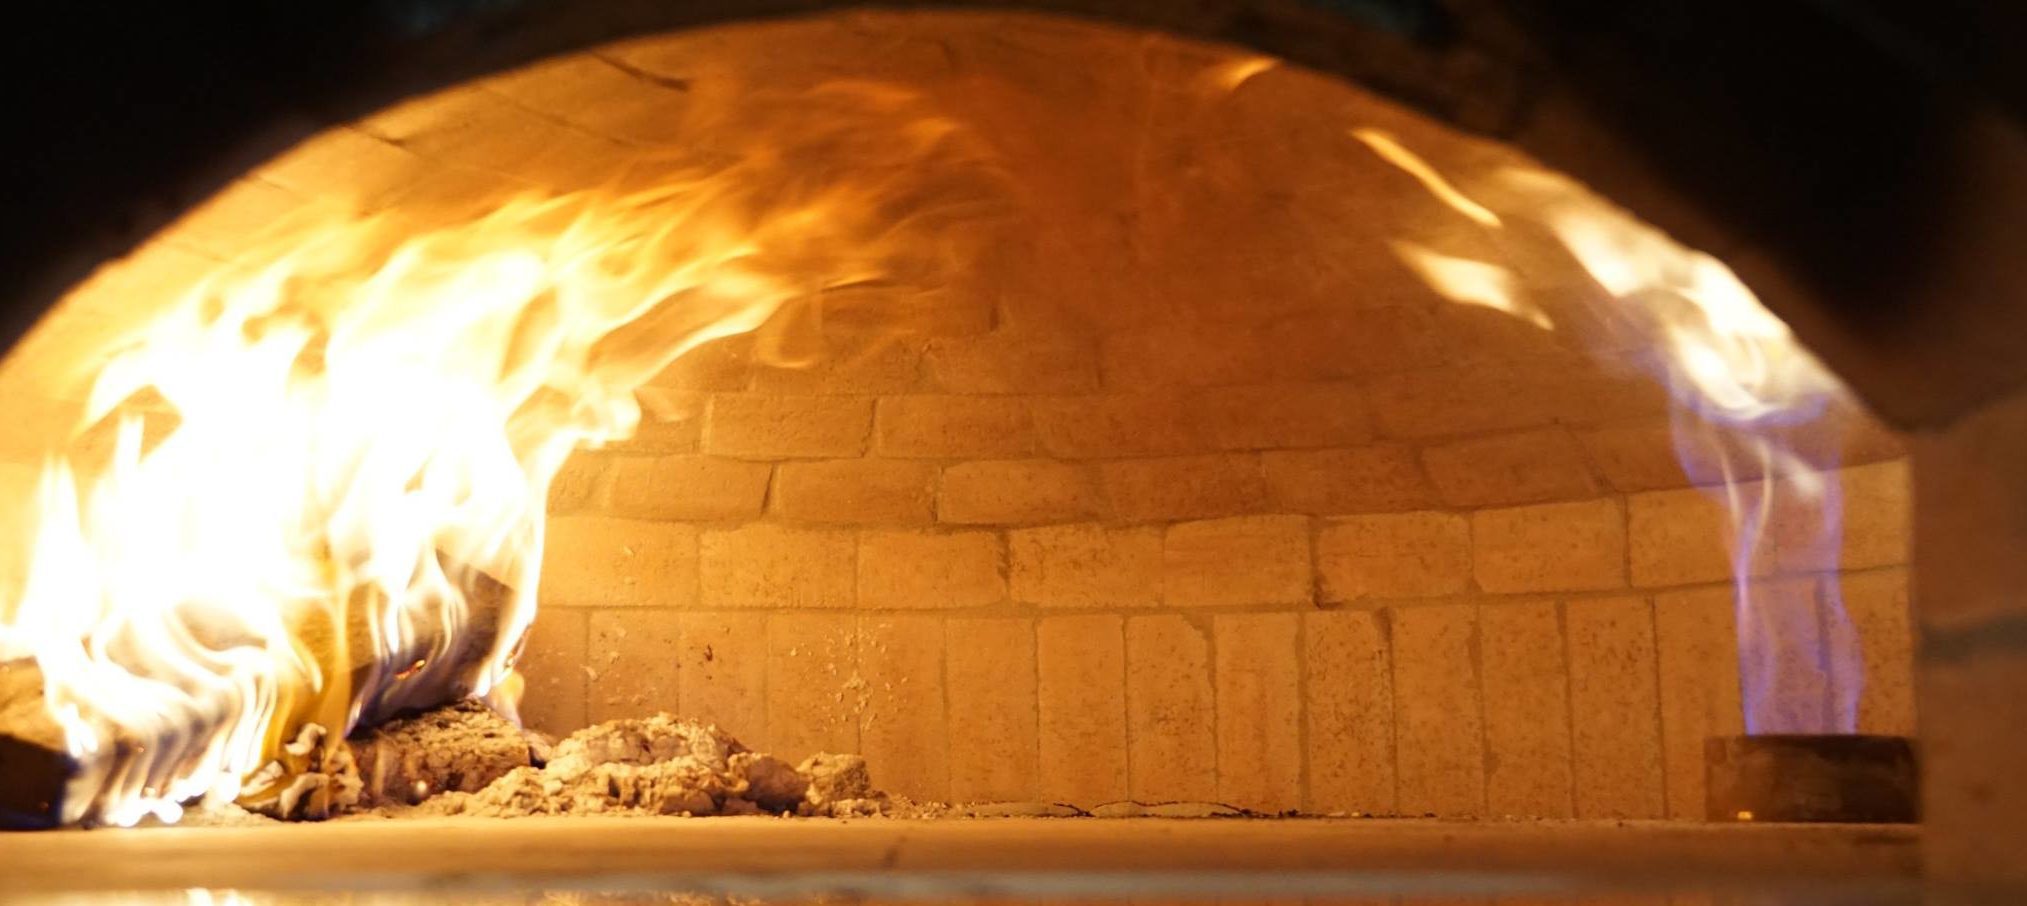 Forno Classico brick pizza oven